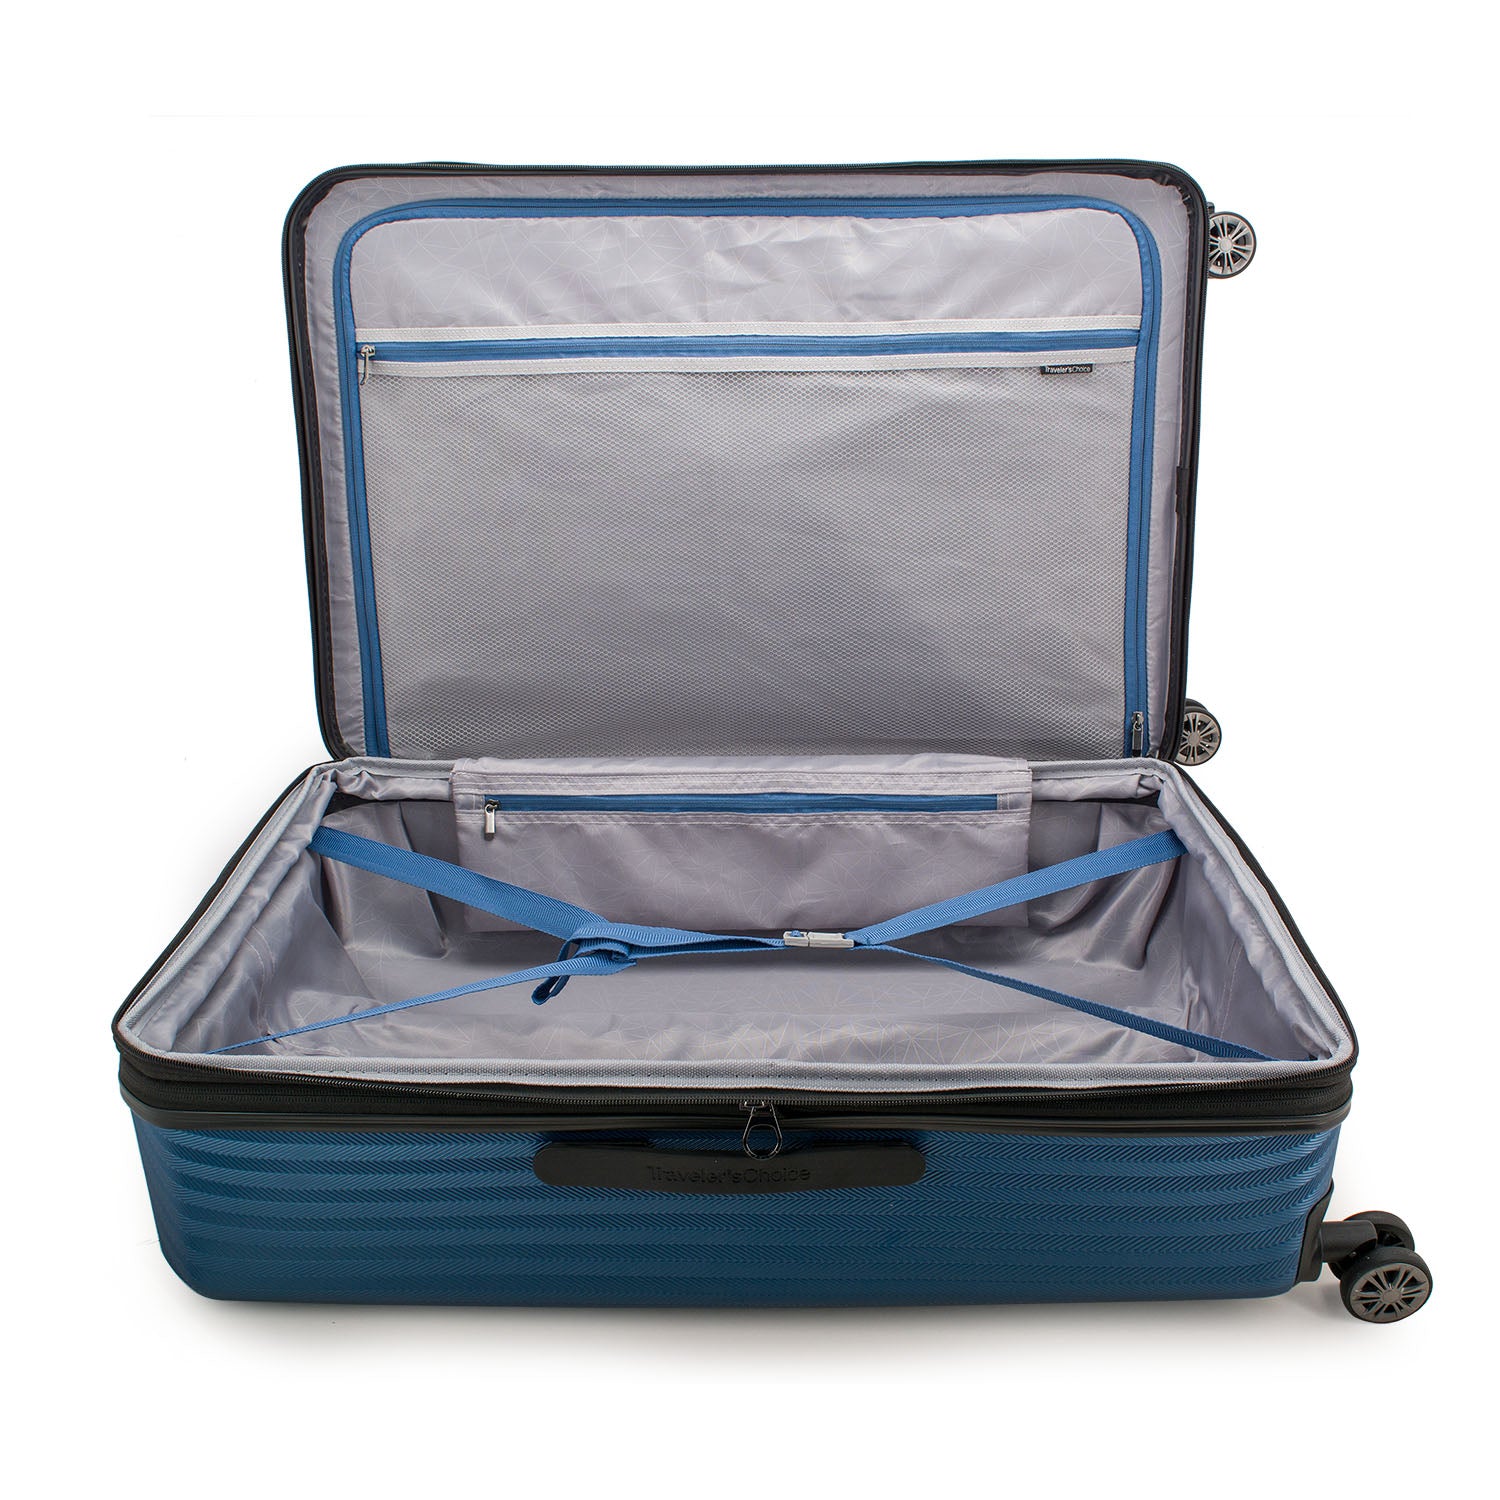 Dana Point Hardside Expandable 3-Piece Luggage Suitcase Set